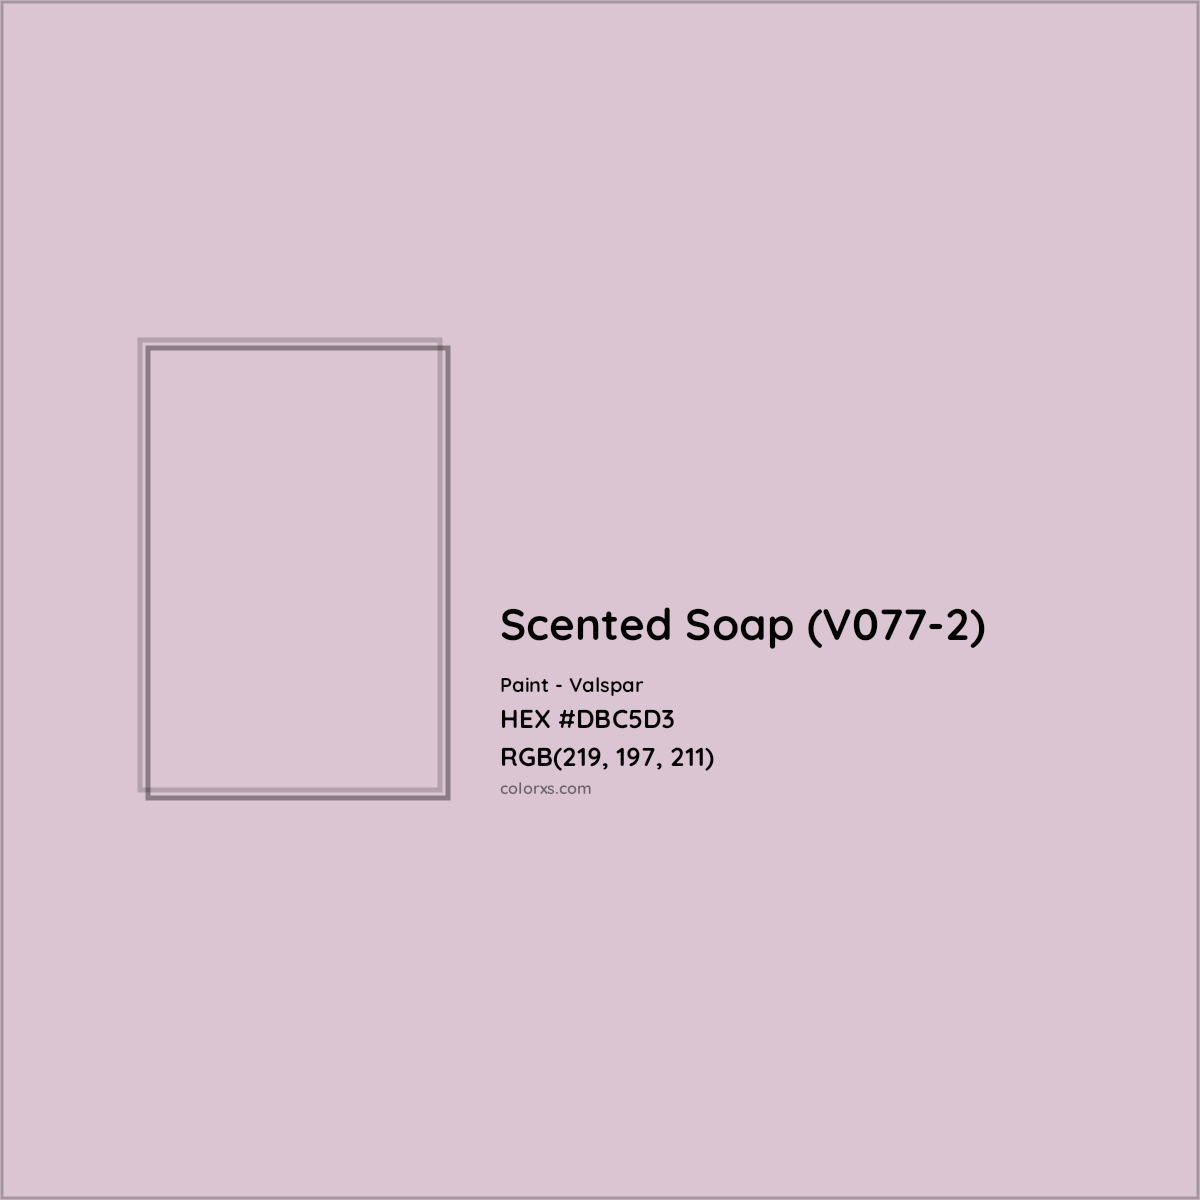 HEX #DBC5D3 Scented Soap (V077-2) Paint Valspar - Color Code